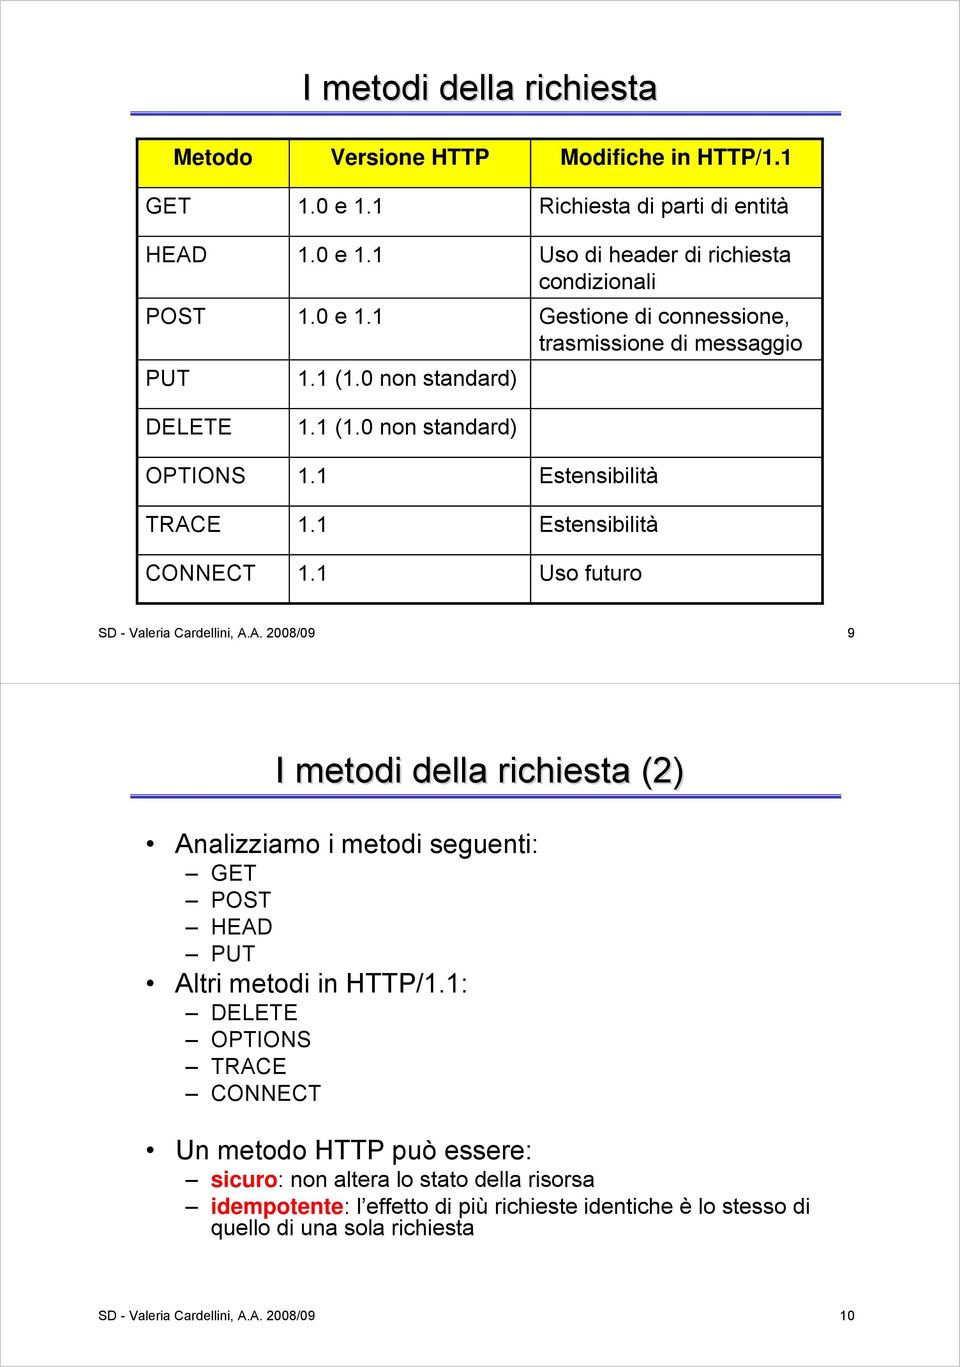 Cardellini, A.A. 2008/09 9 I metodi della richiesta (2) Analizziamo i metodi seguenti: GET POST HEAD PUT Altri metodi in HTTP/1.